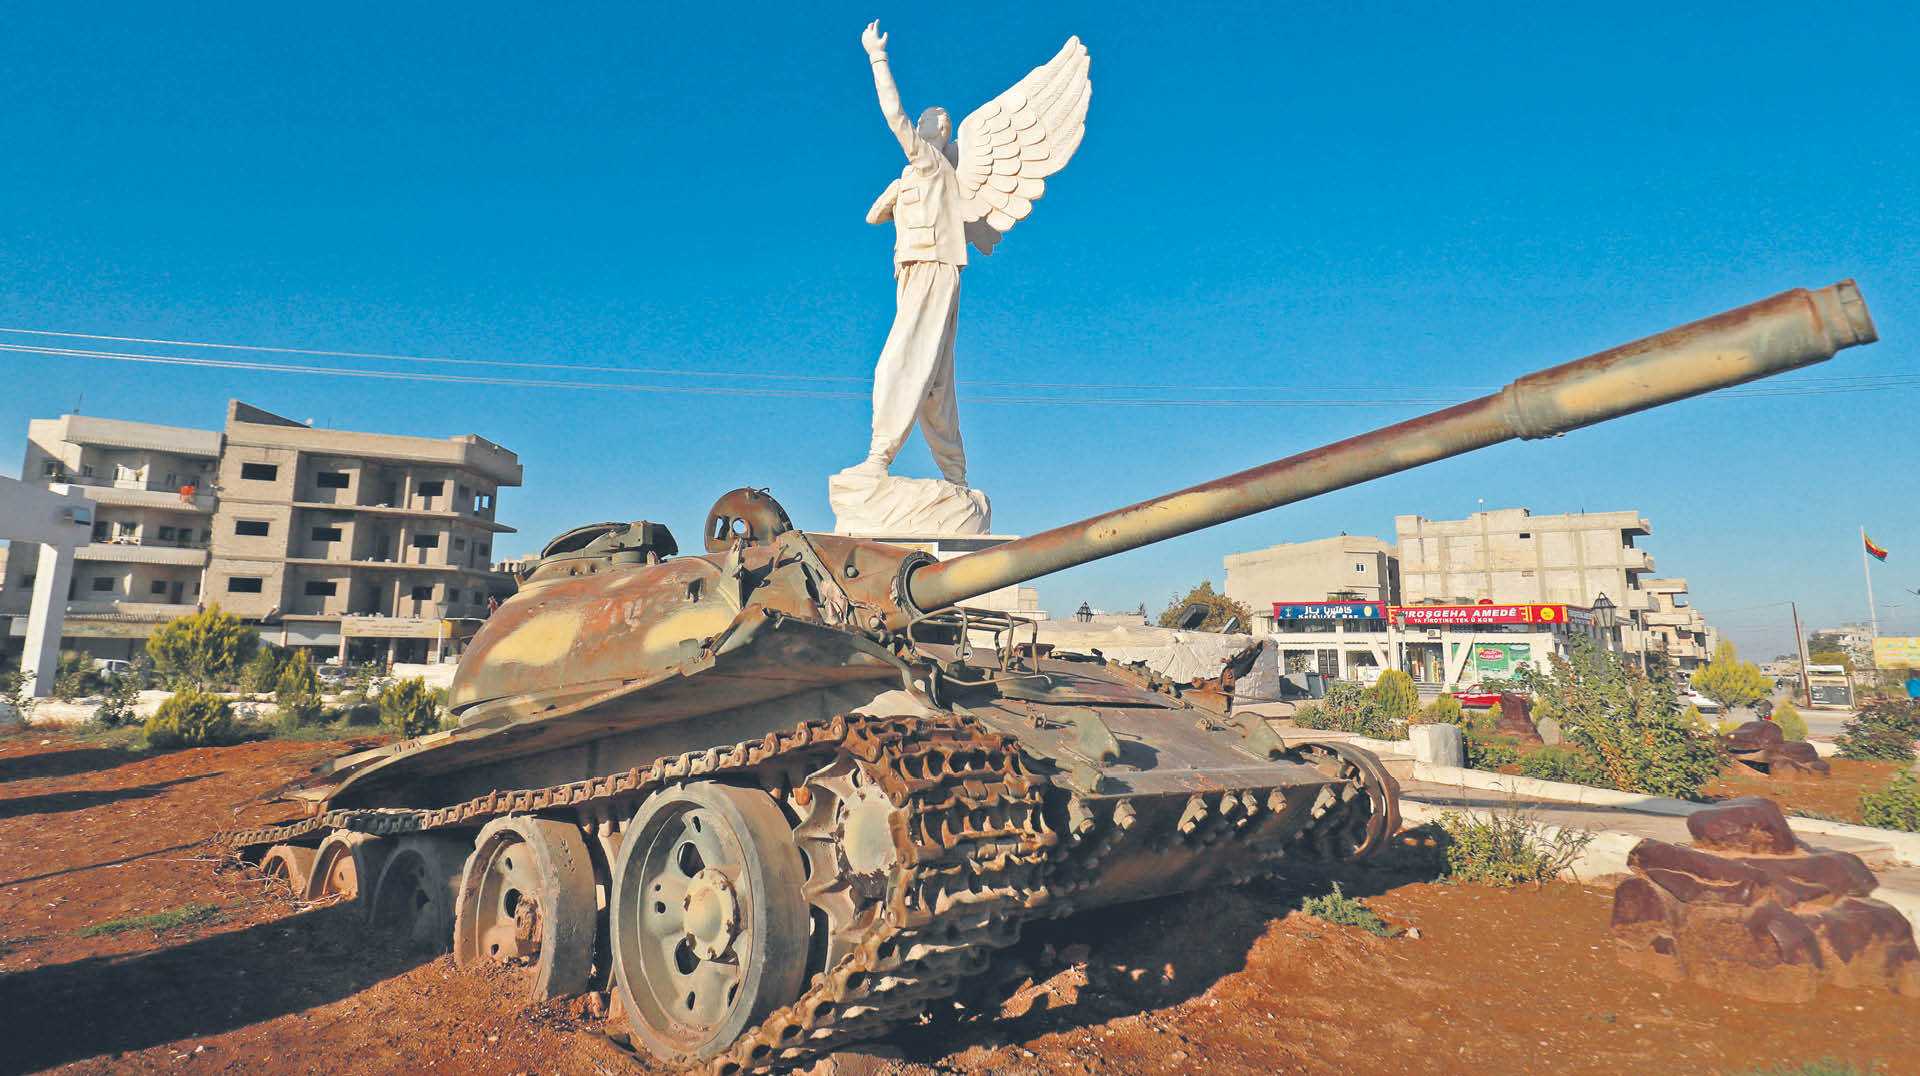 Kurdyjskie miasto Kobane, znane również jako Ajn al-Arab, w prowincji Aleppo